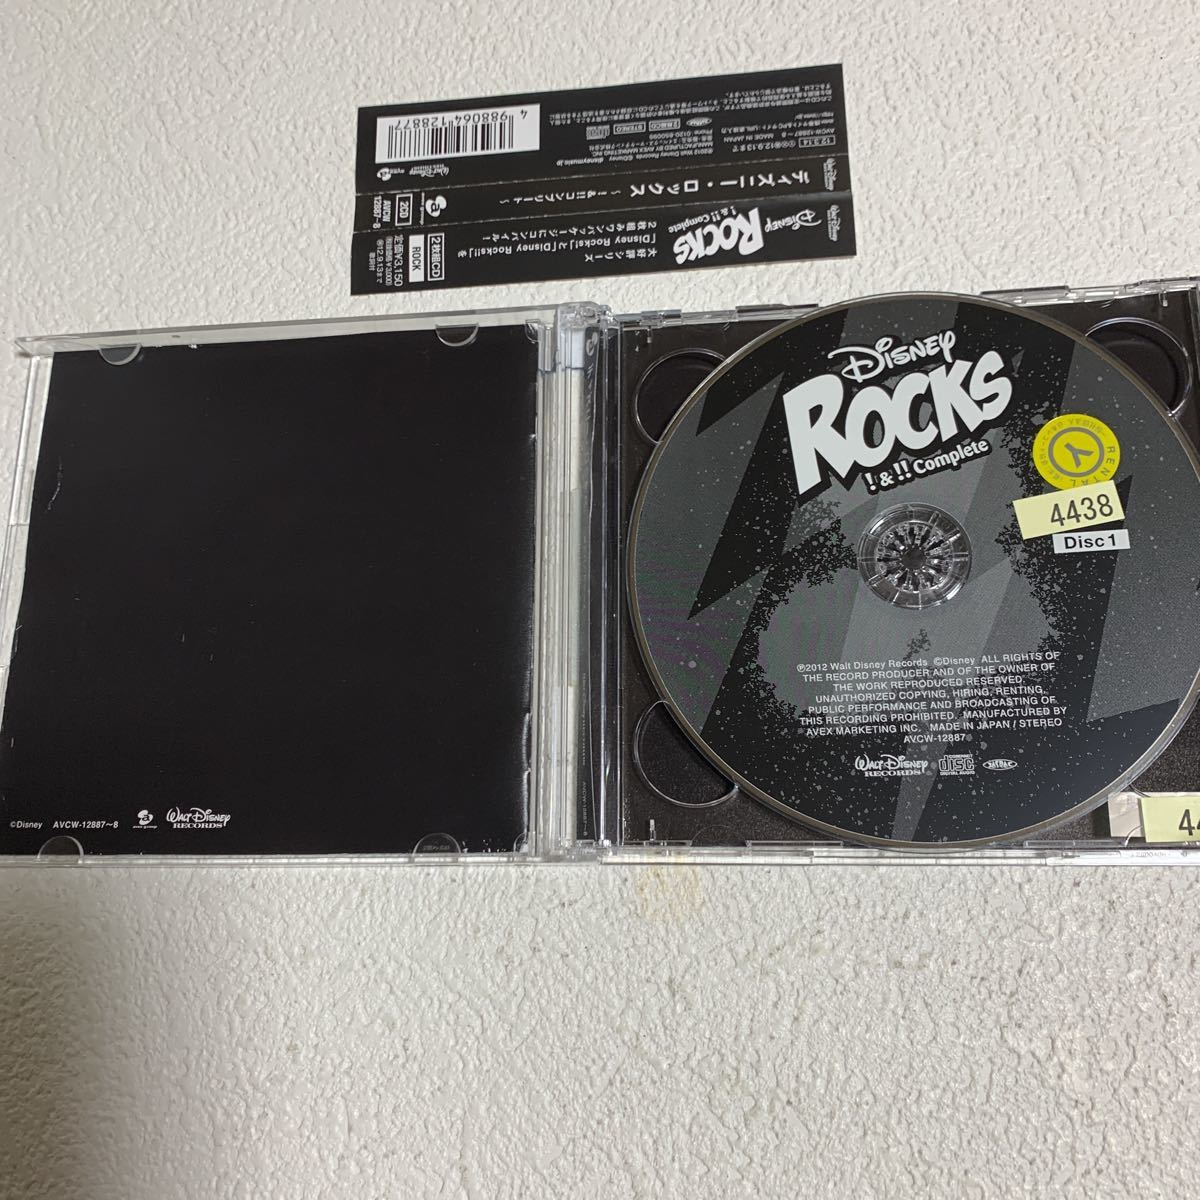  Disney * lock s very popular series ROCKS!&!! Complete [Disney Rocks!]2 sheets set one package . navy blue pie ru! rental used CD